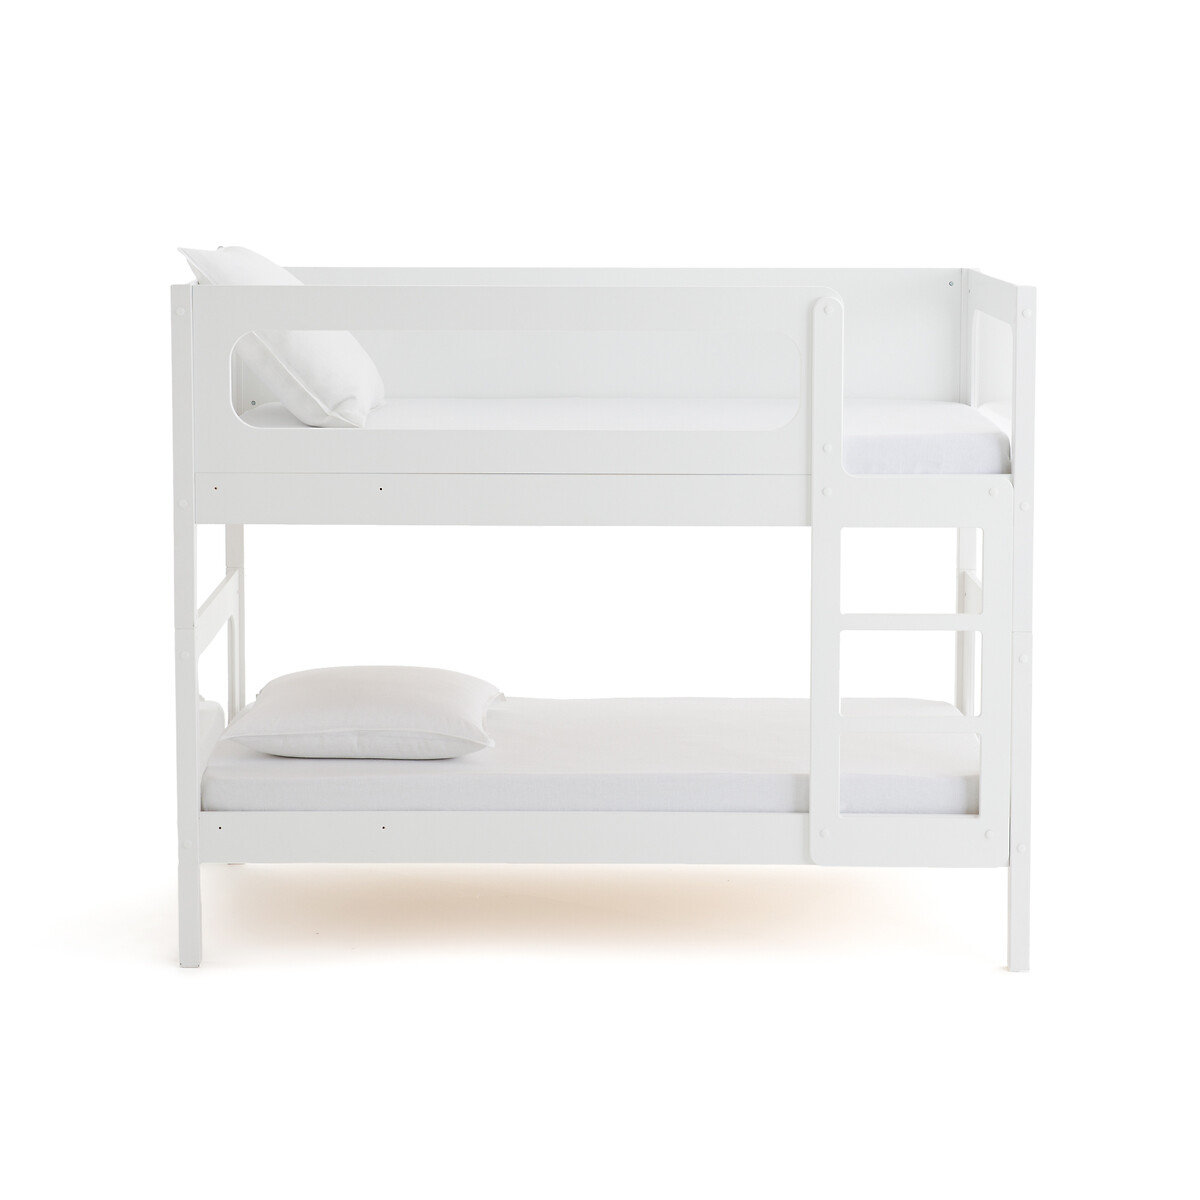 Кровать Двухъярусная с кроватным основанием Pilha 90 x 190 см белый LaRedoute, размер 90 x 190 см - фото 2